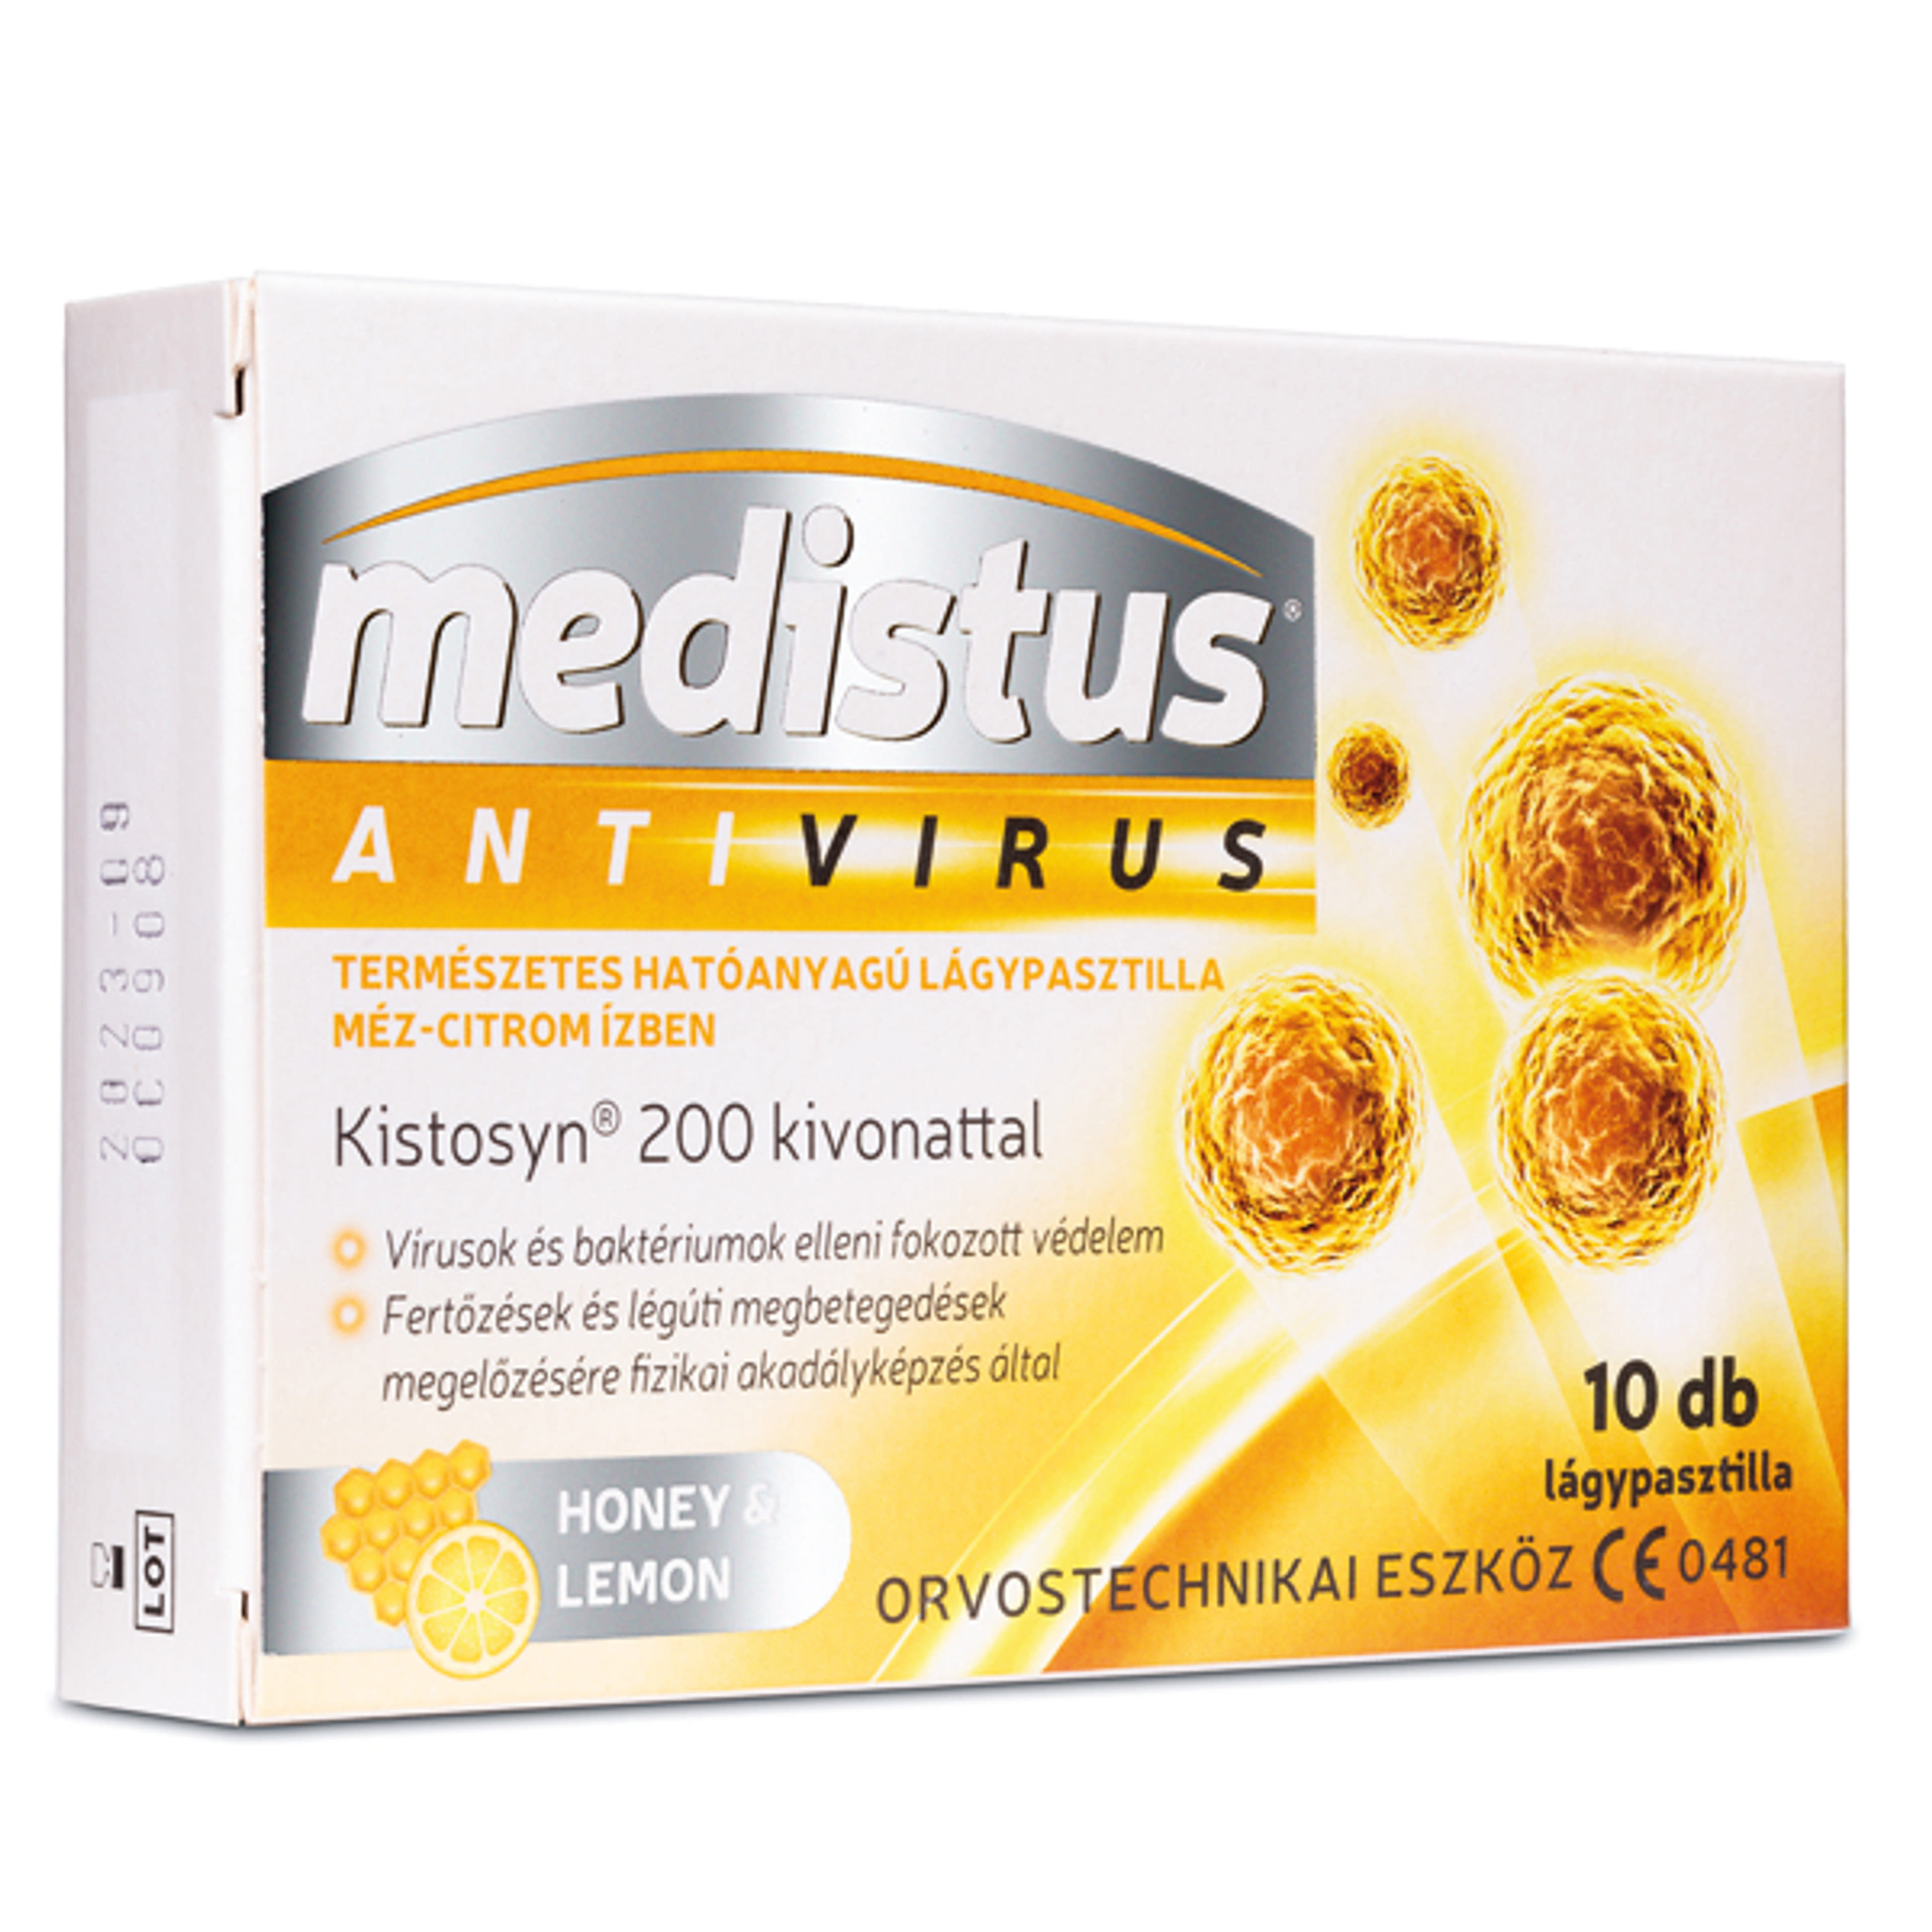 Medistus antivírus mézes-citromos ízű lágykapszula - 10 db-1